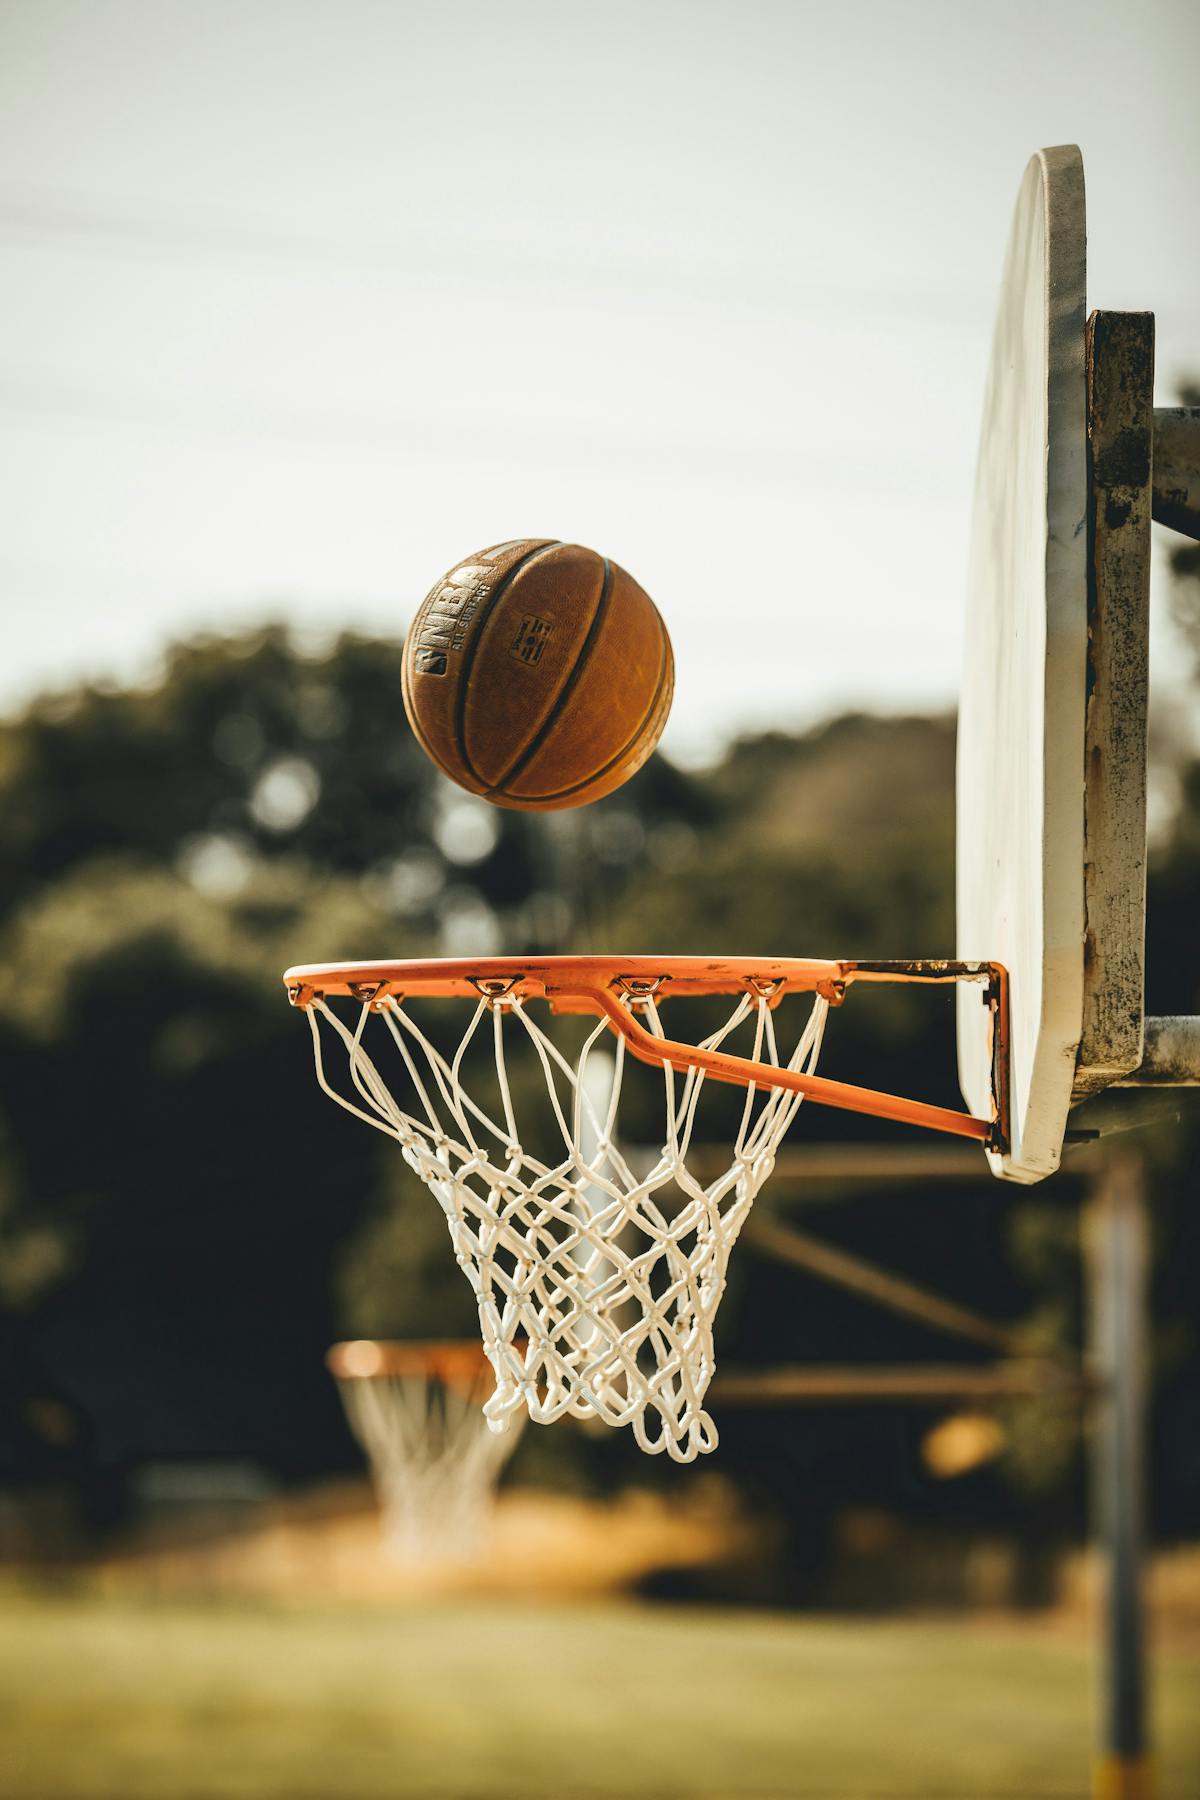 Basketball imagery